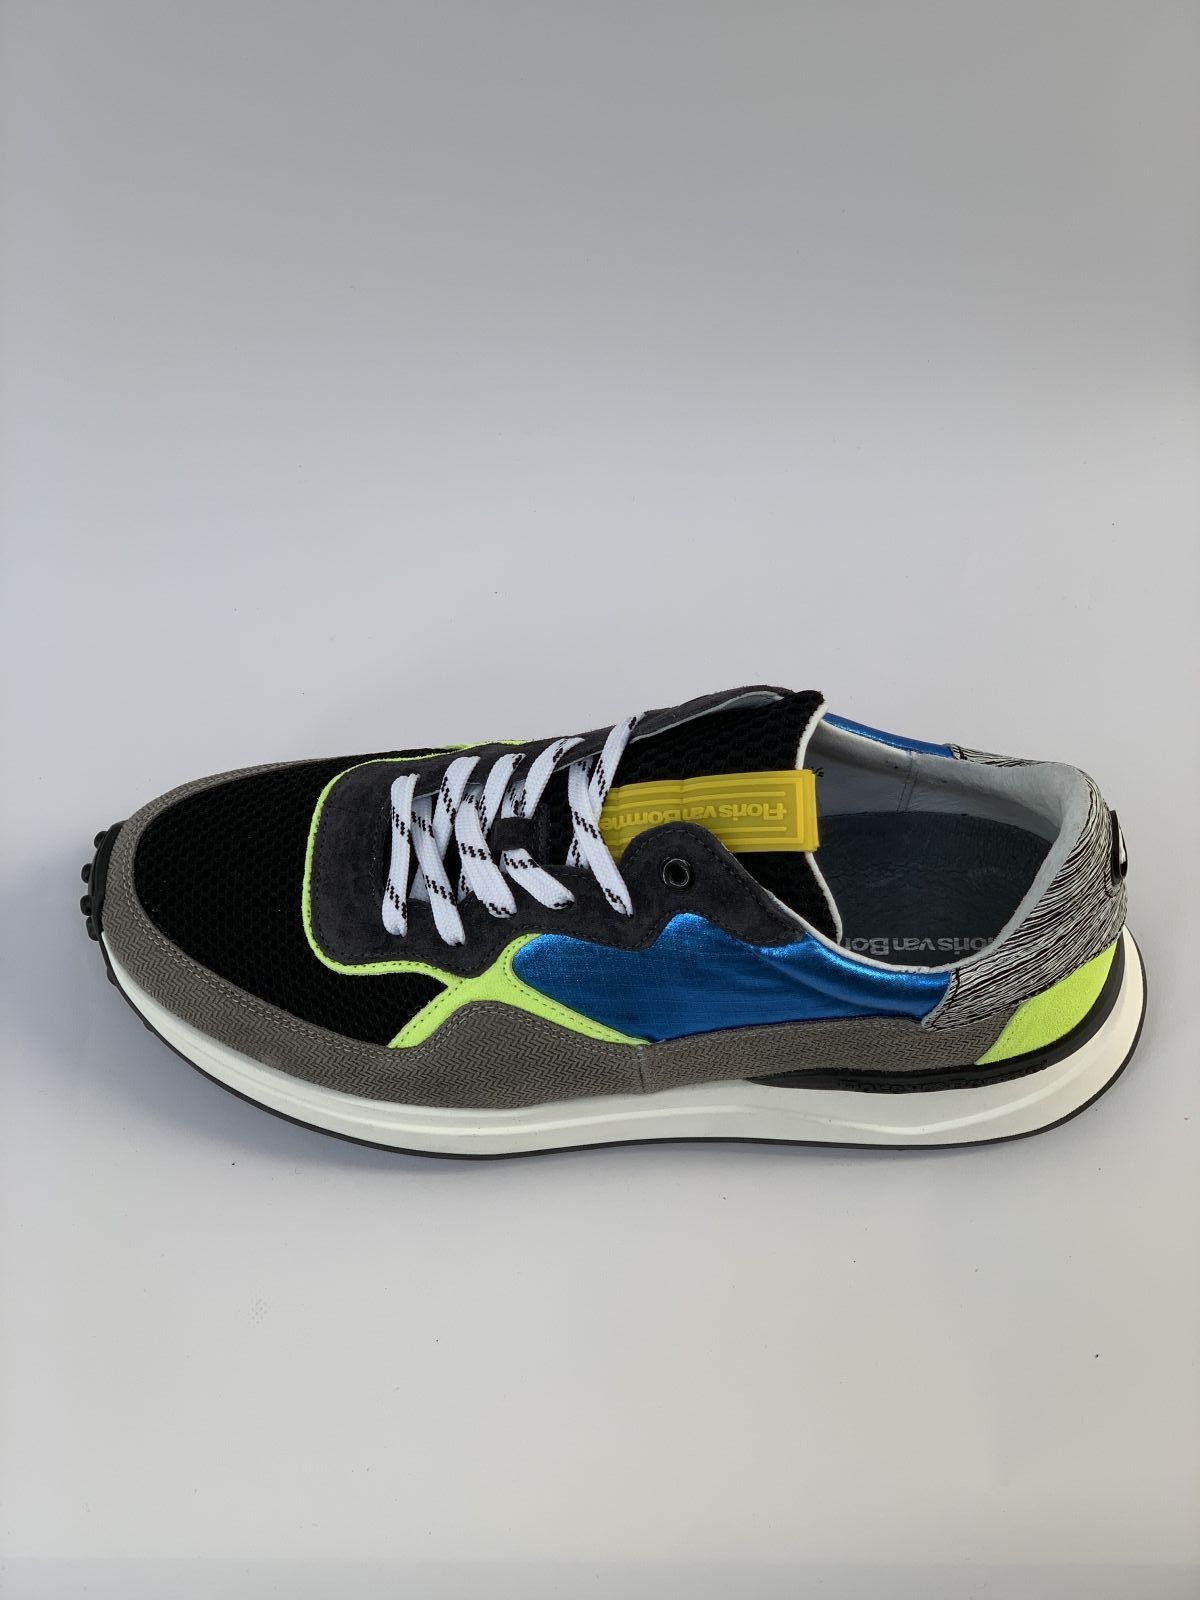 Van Bommel Sneaker Grijs+kleur heren (Runner Grijs/Geel - 16301) - Schoenen Luca